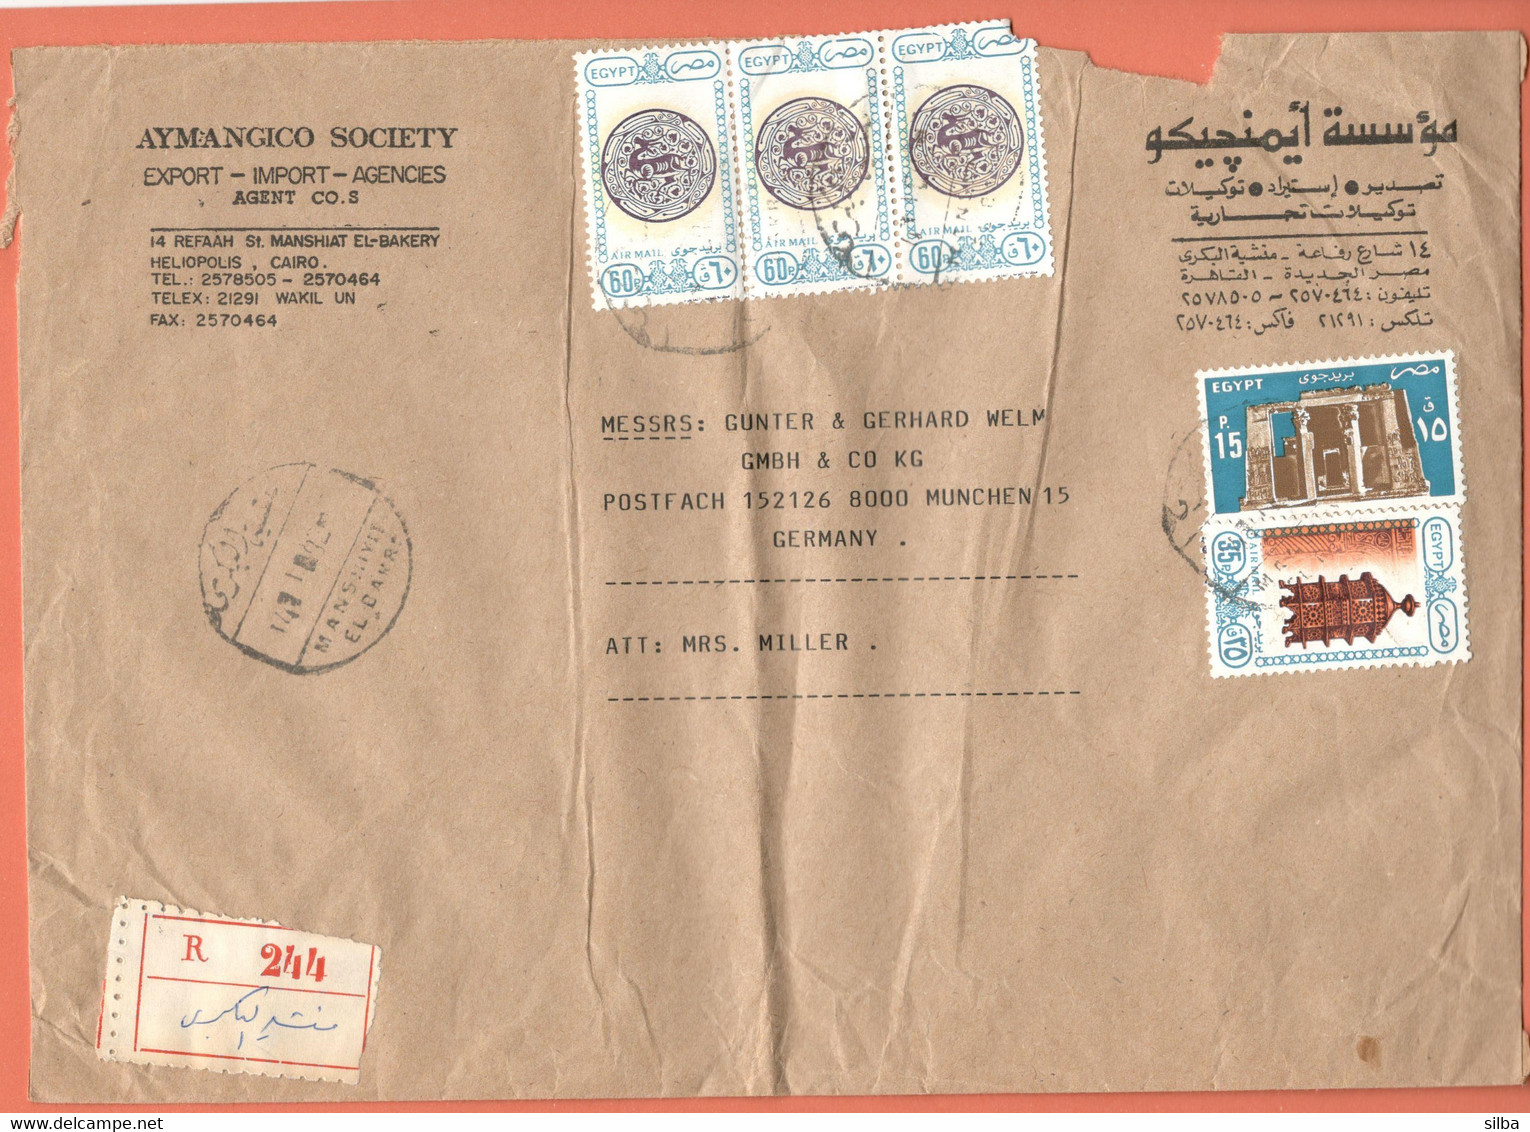 Egypt / Airmail - Art And Mosques, Lantern 35 P, Dish With Gazelle Motif - 60 P, 1989, Edfu Temple, 15 P, 1985 - Brieven En Documenten